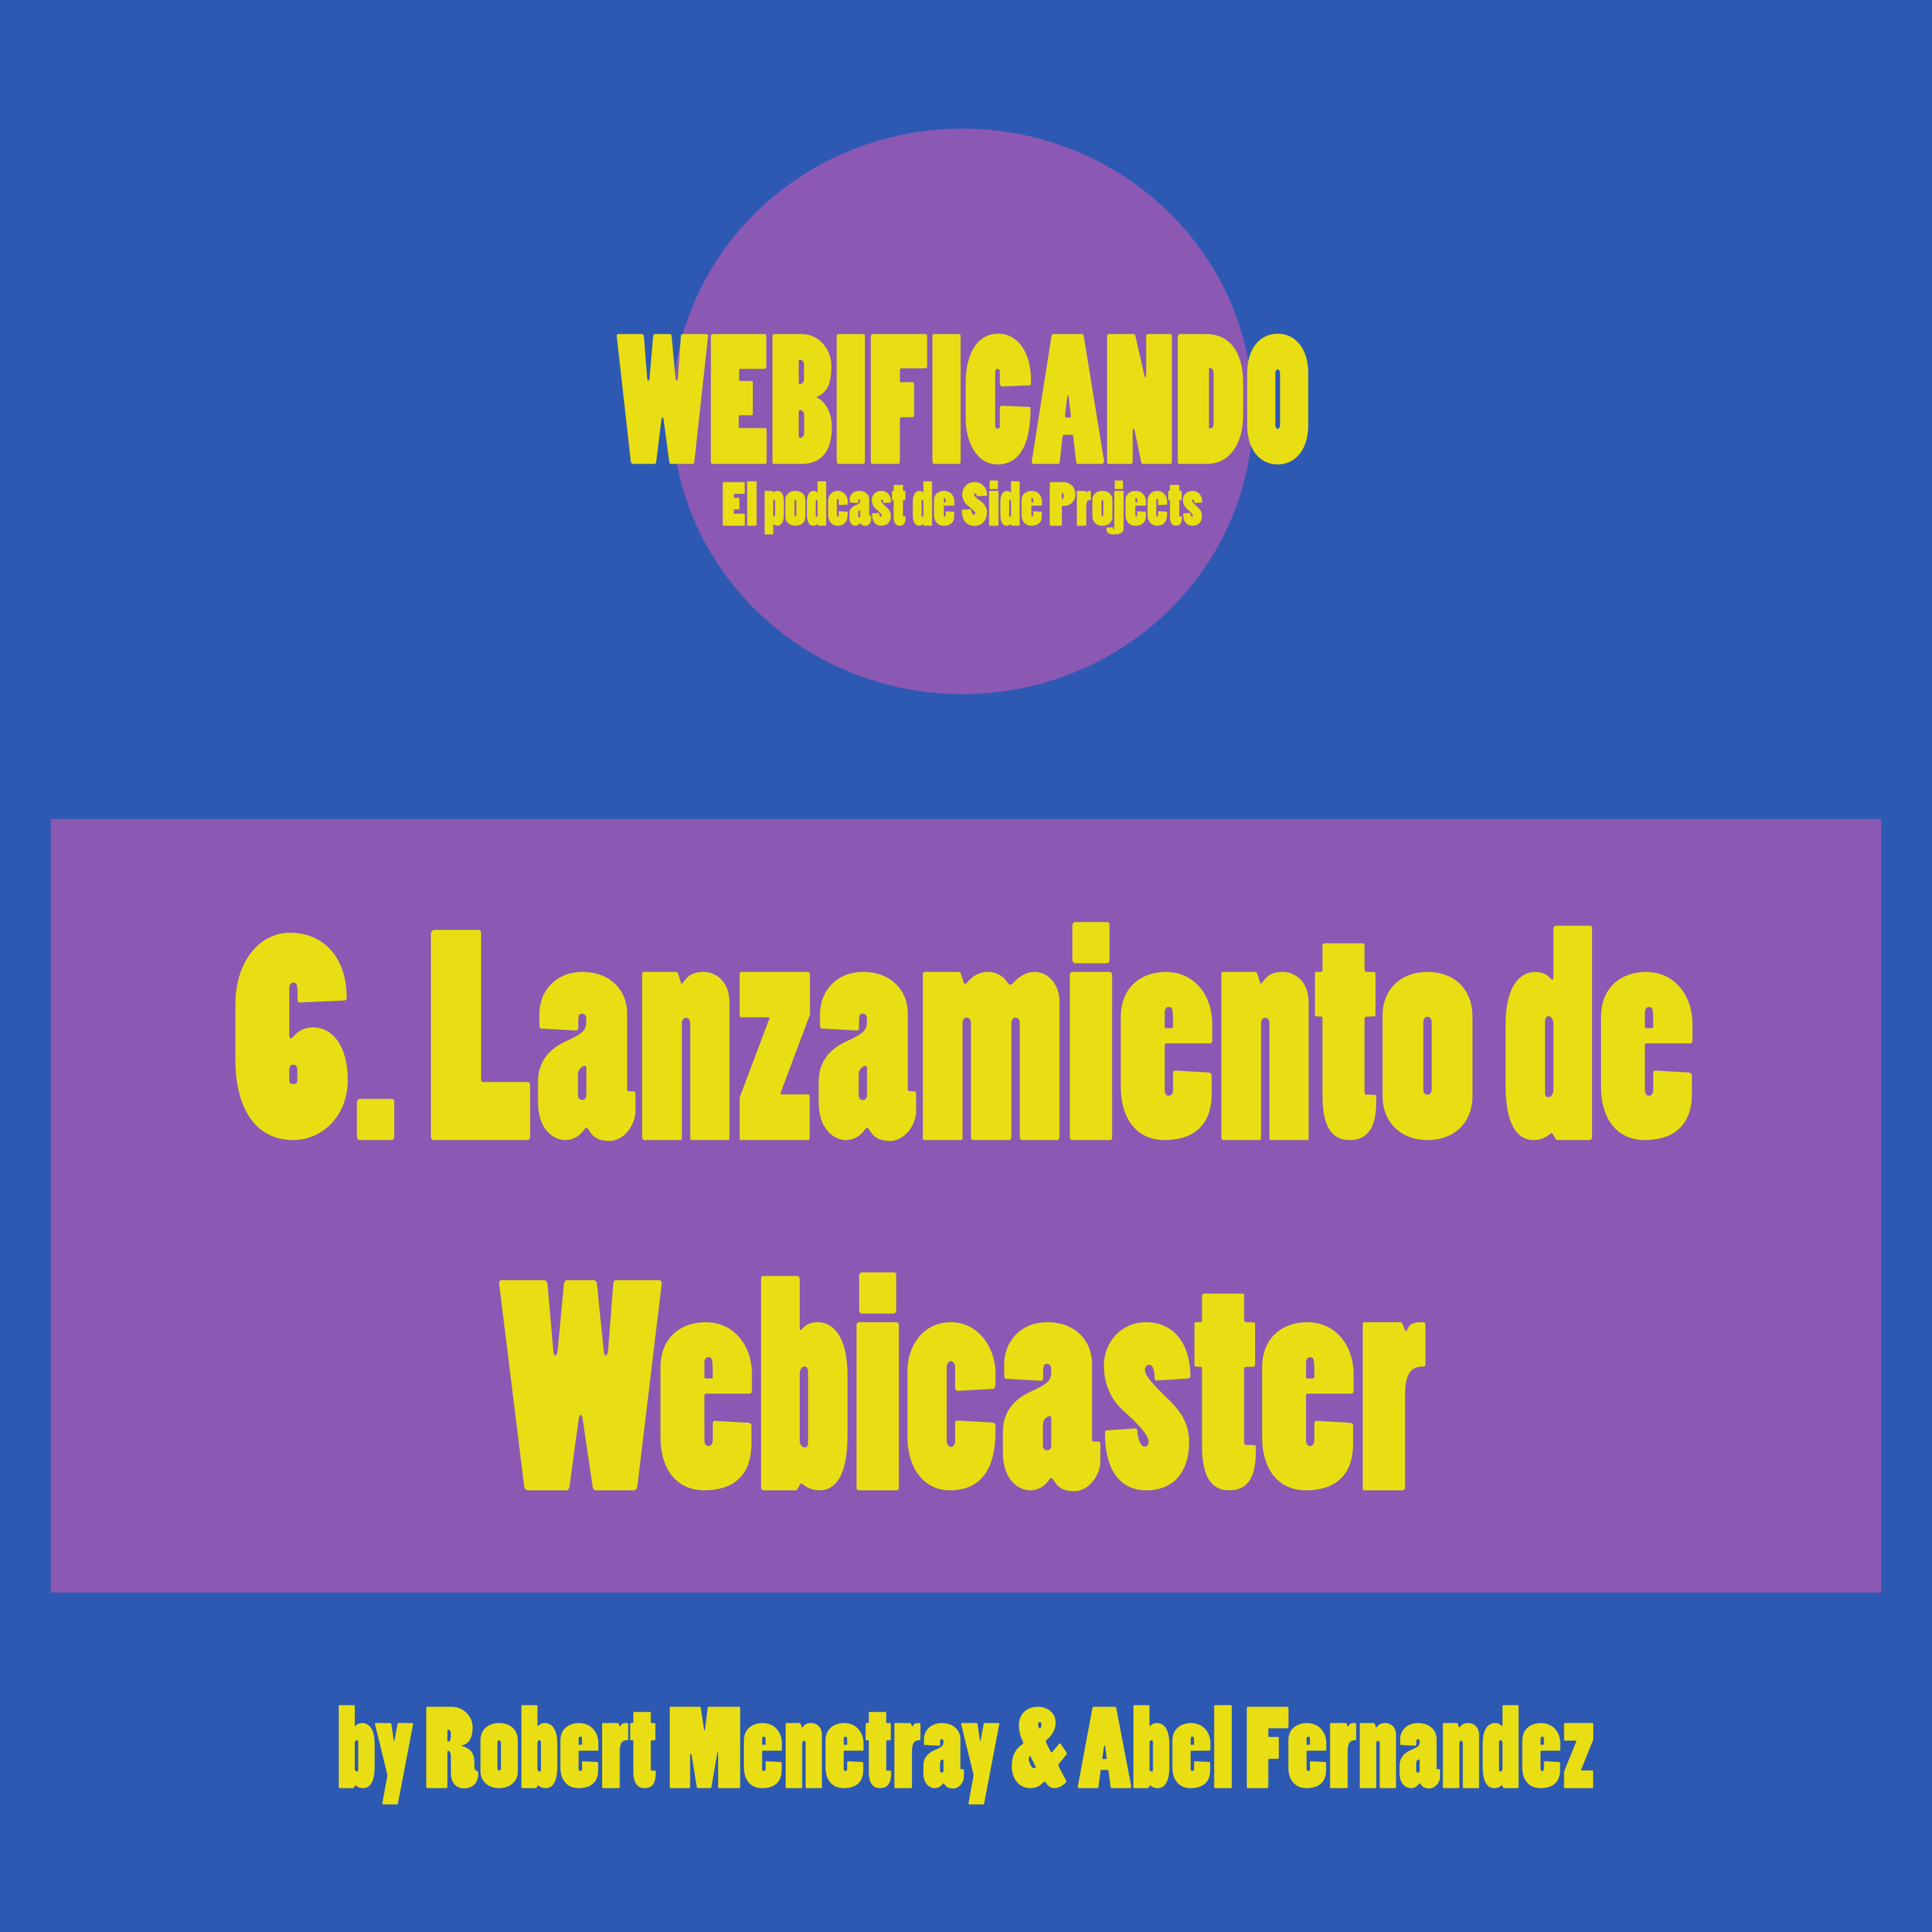 6. Lanzamiento de Webicaster